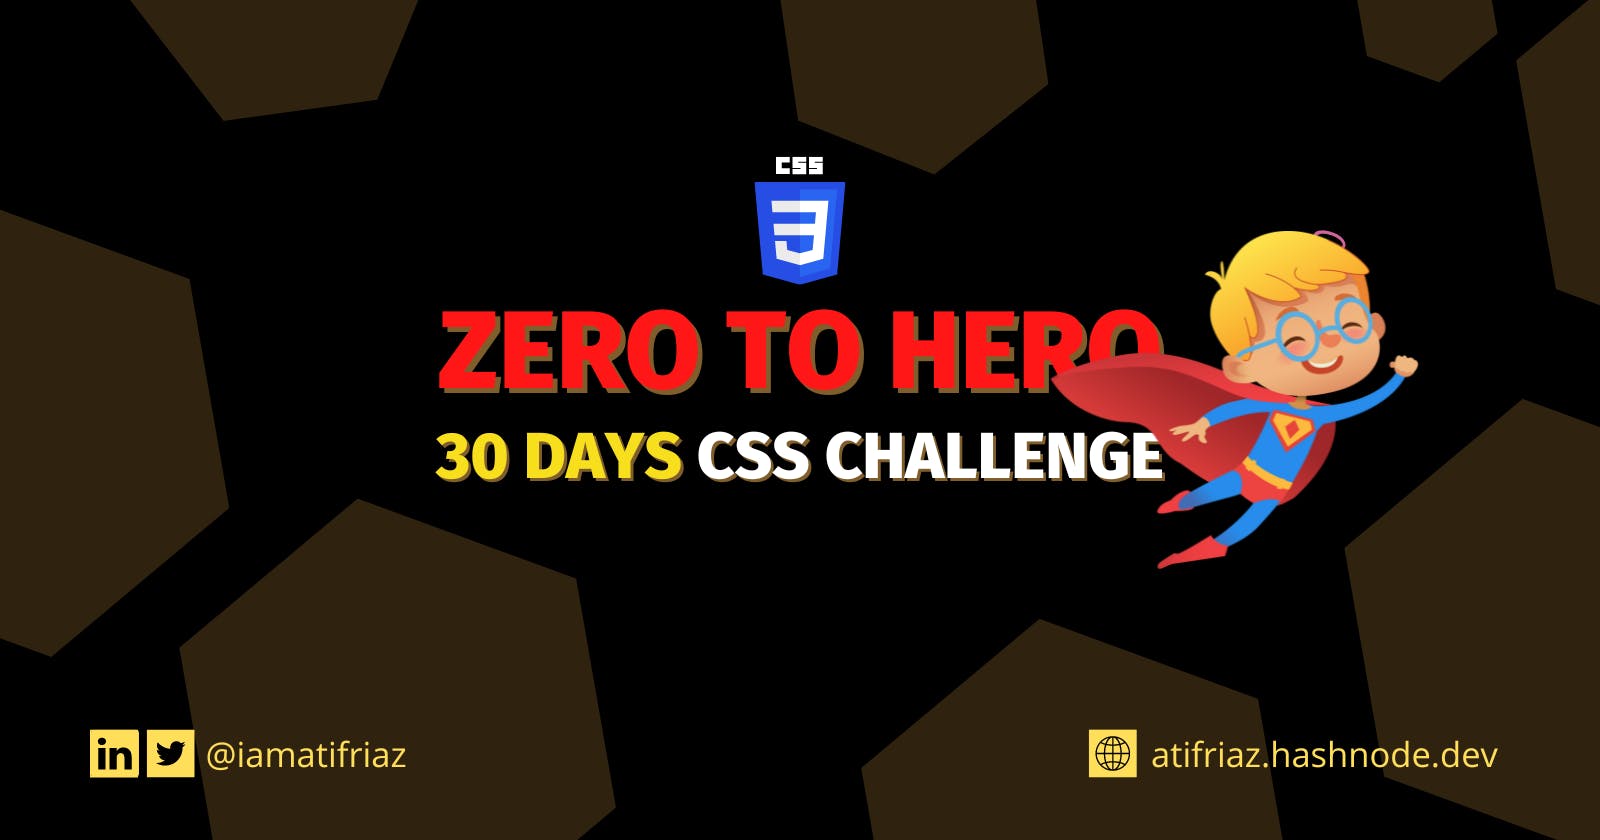 30 Days CSS challenge - ZERO to HERO